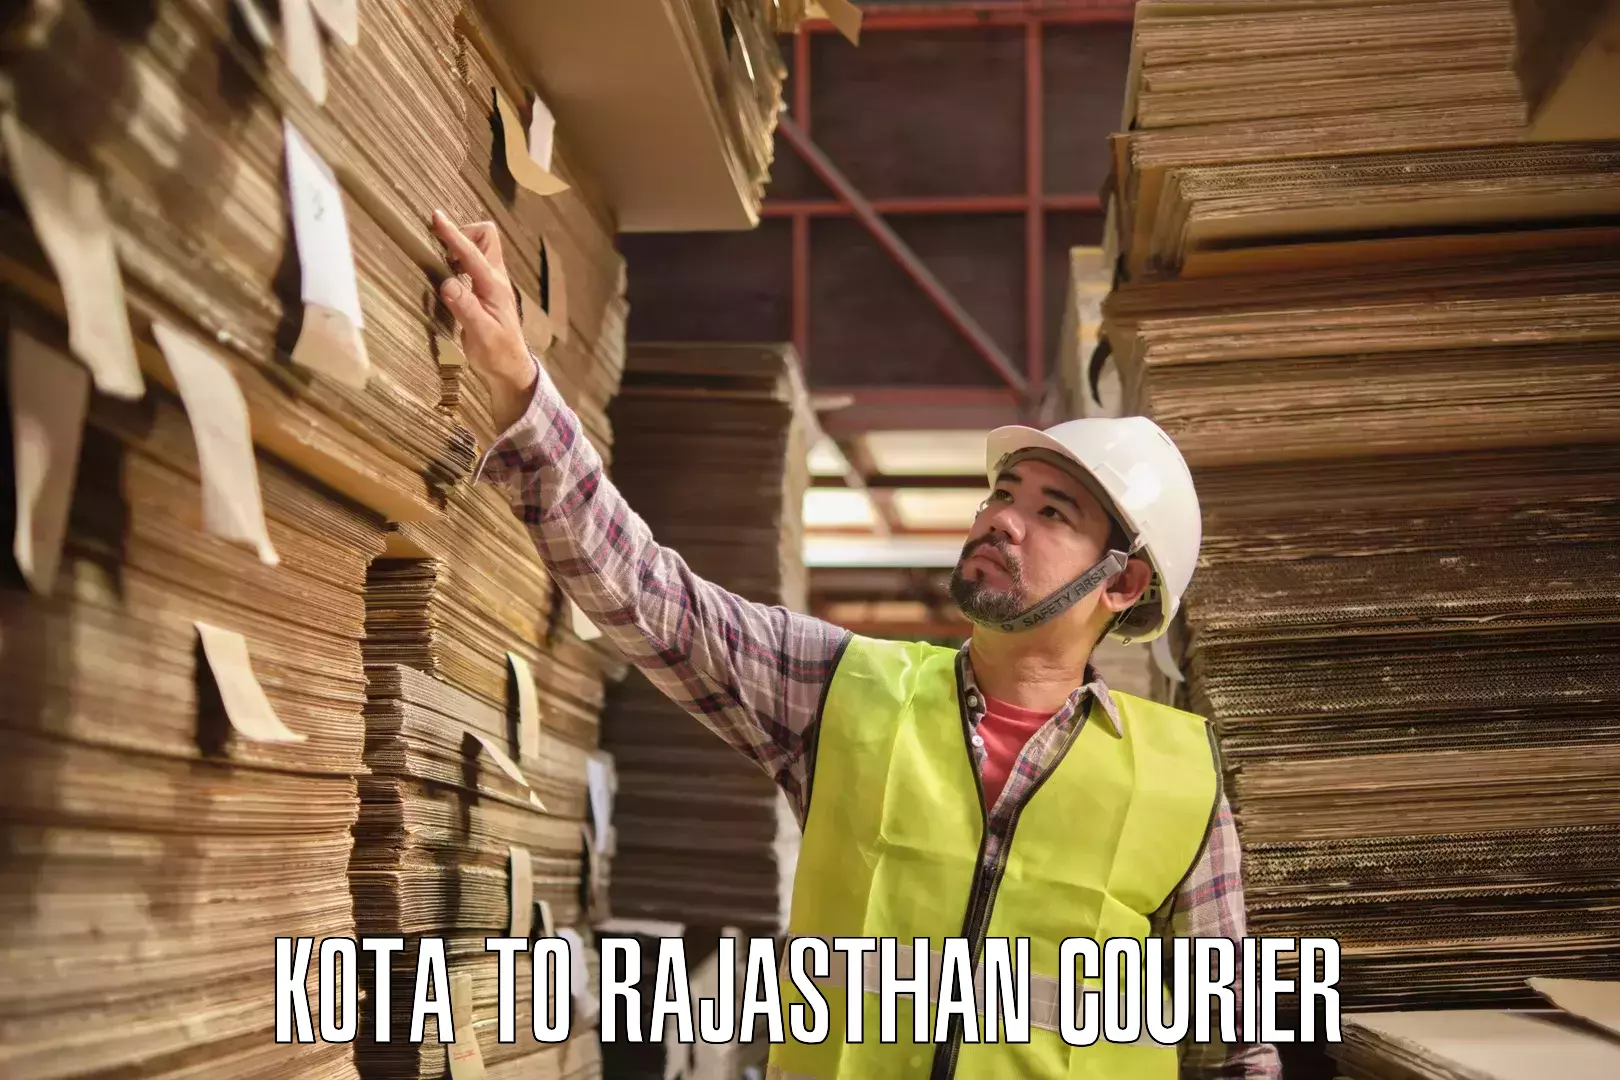 International parcel service Kota to Rajasthan